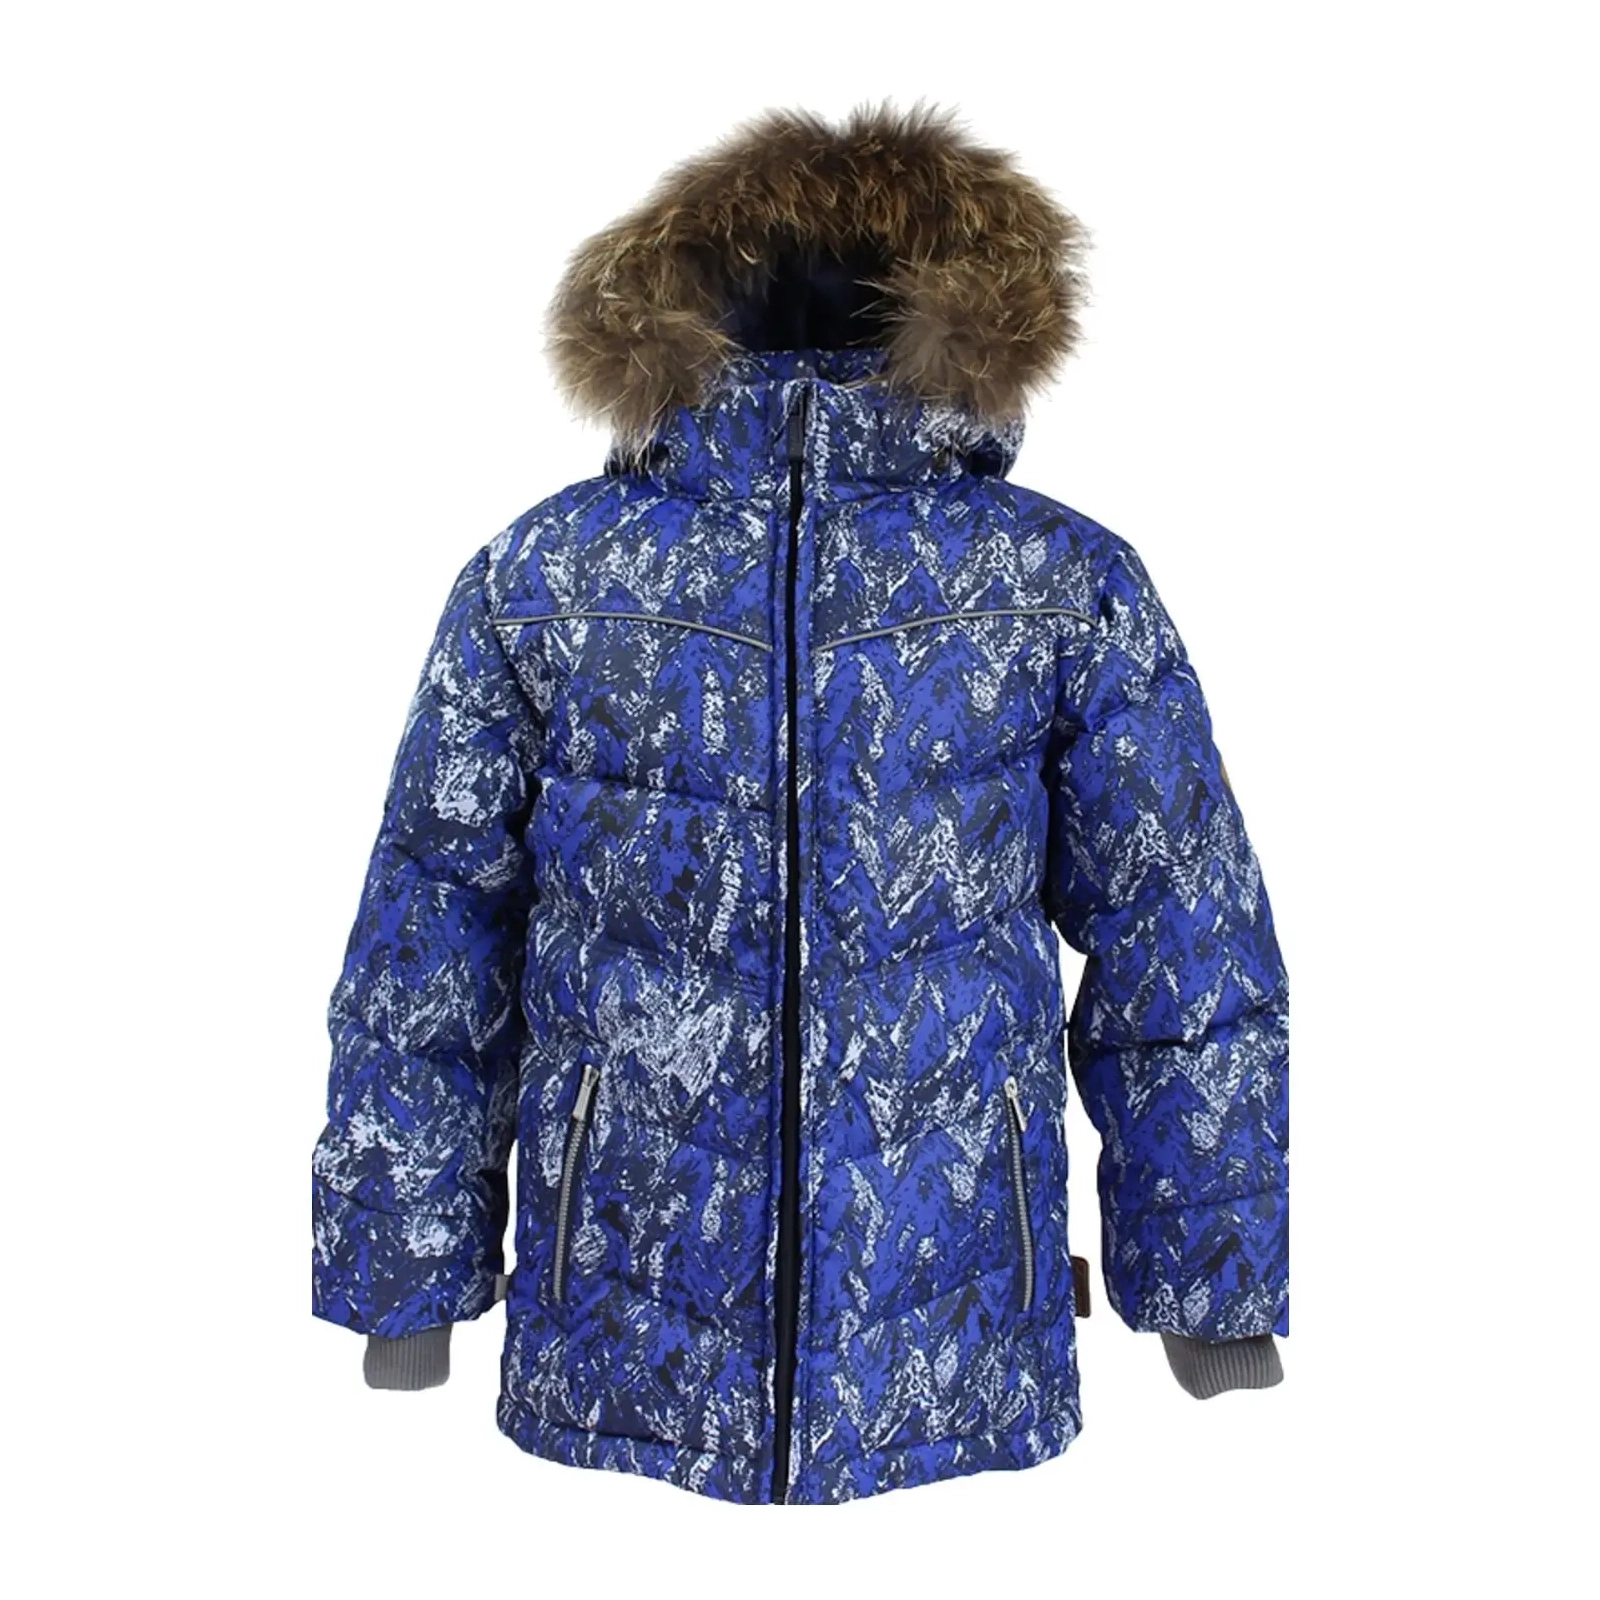 Куртка Huppa MOODY 1 17470155 синій з принтом 116 (4741468568744)